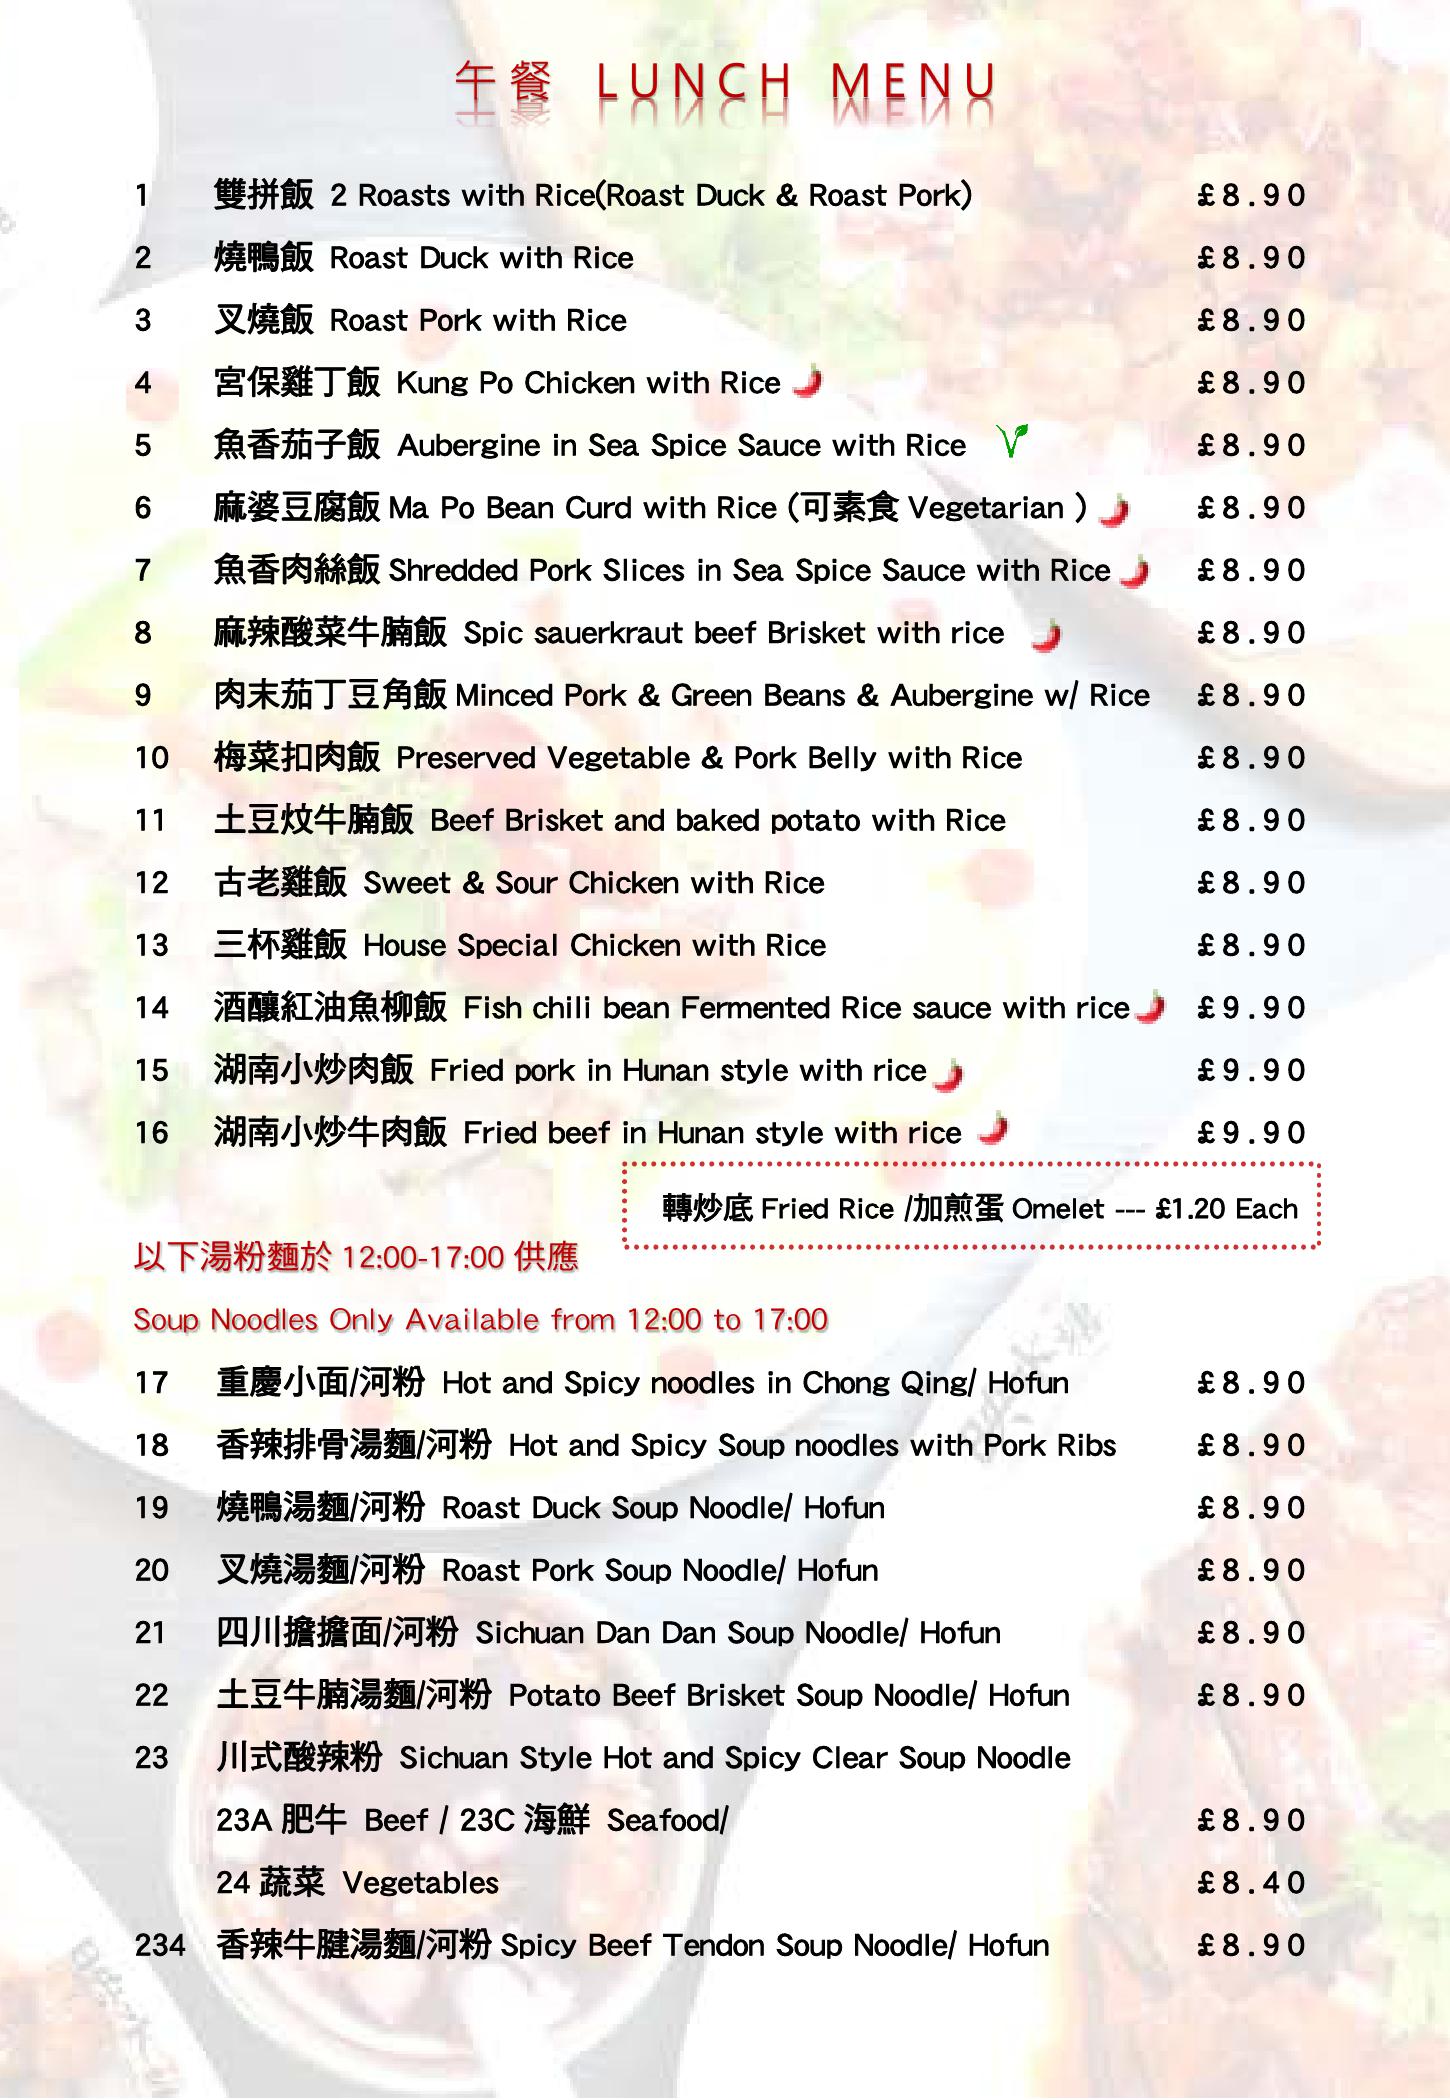 Shanghai Shanghai Chinese Restaurant & Bar - main menu